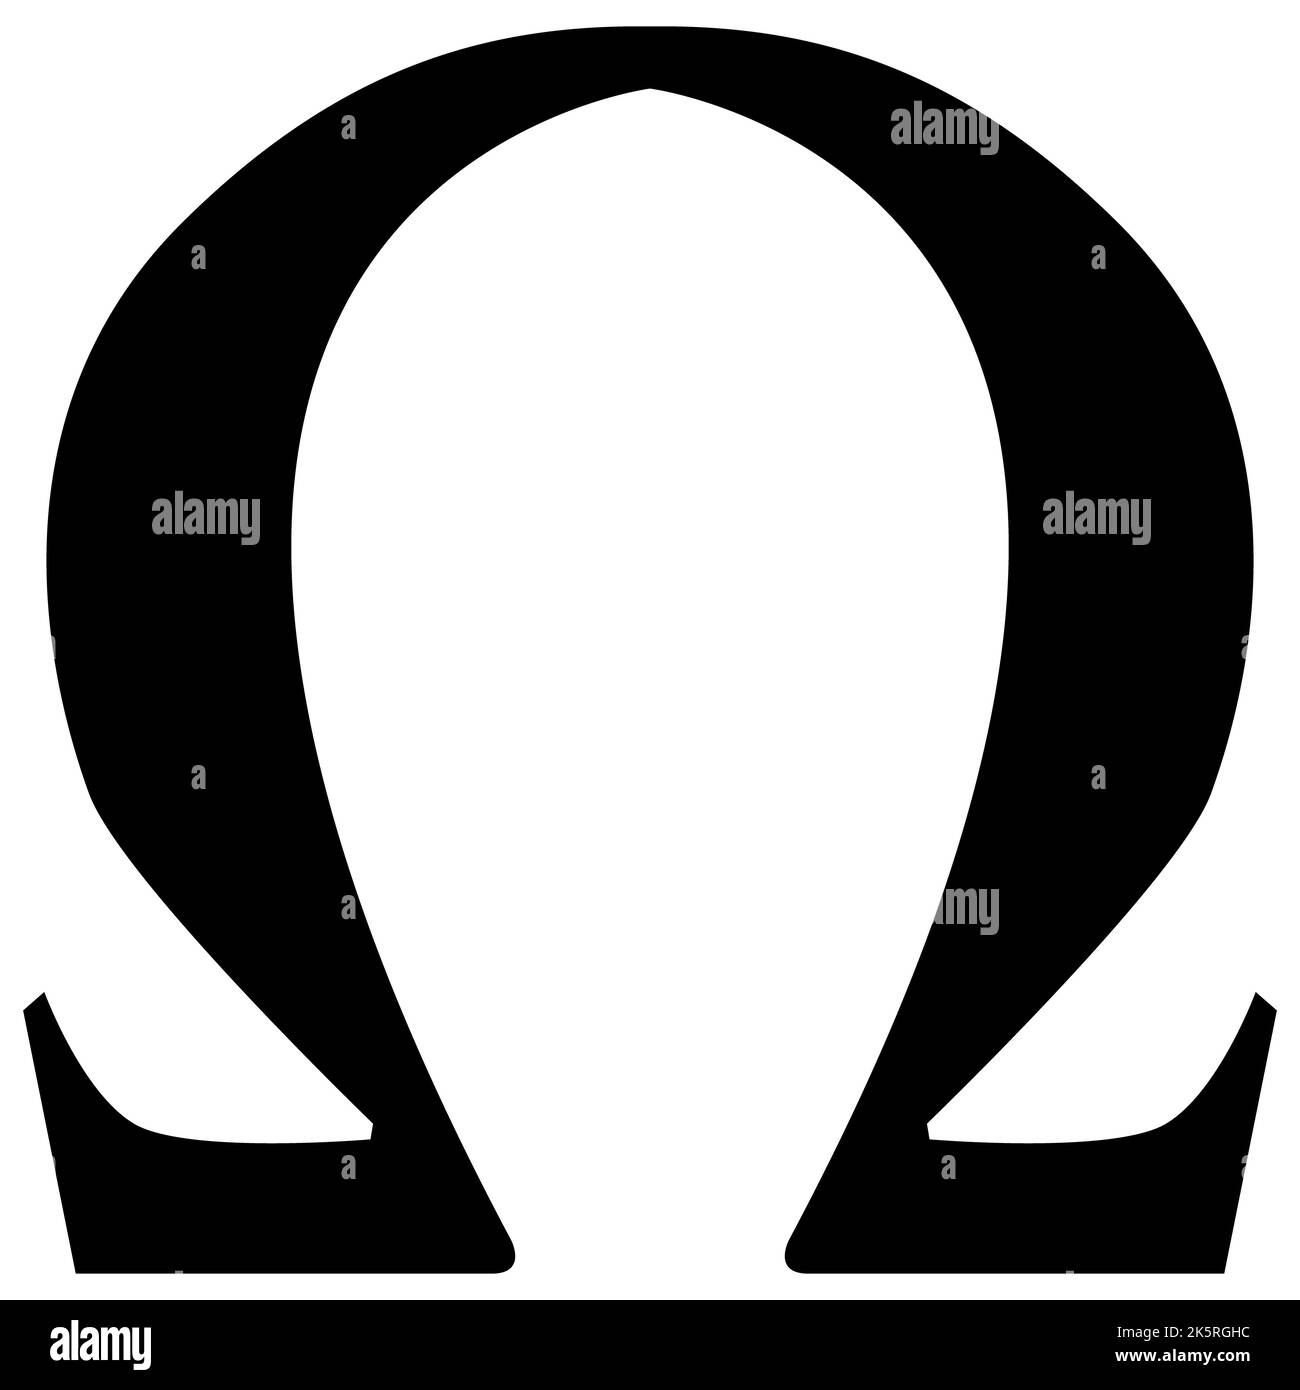 Omega greek letter icon on white background. Omega symbol. Omega uppercase sign. flat style. Stock Photo